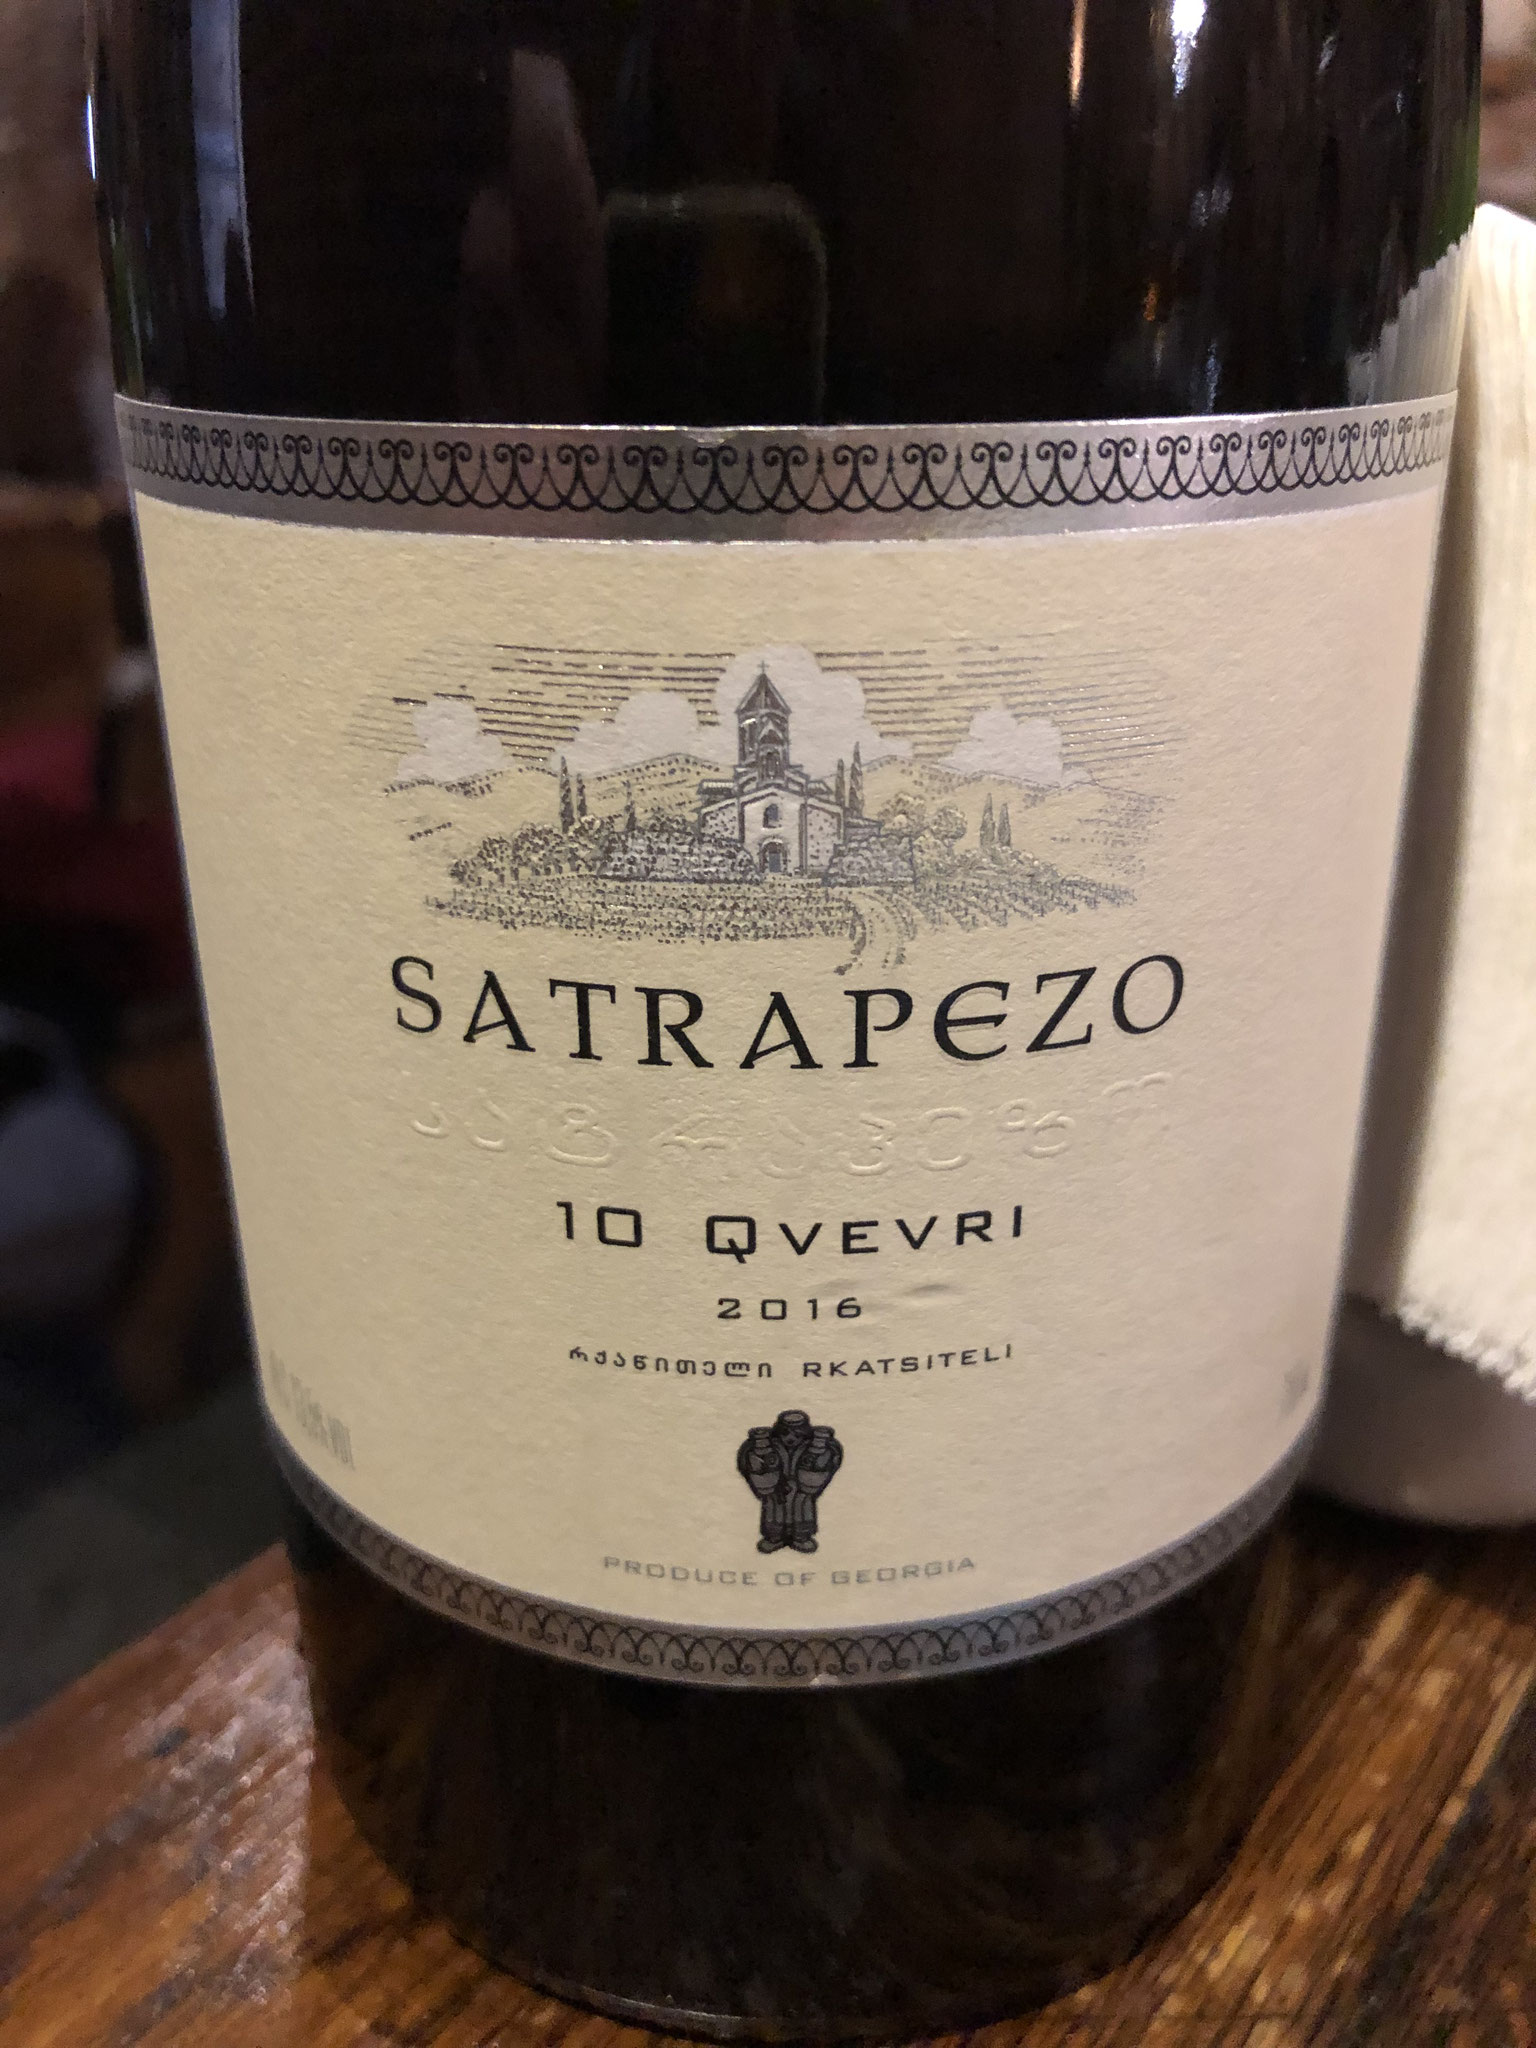 unieke qvevri wijn met blend van 10 célpages